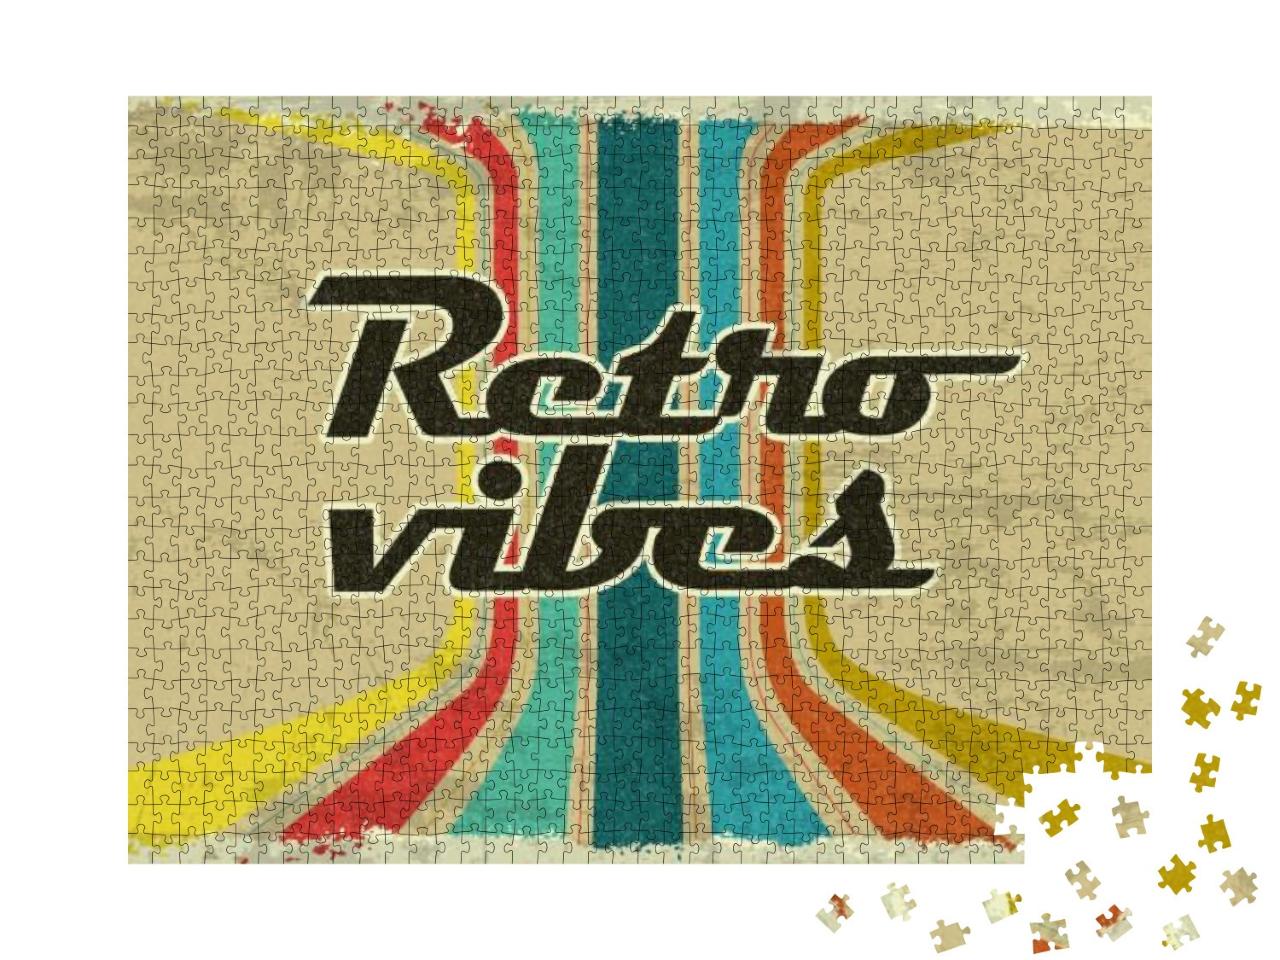 Puzzle 1000 Teile „Retro Vibe Schild aus den 70er und 80er Jahren“